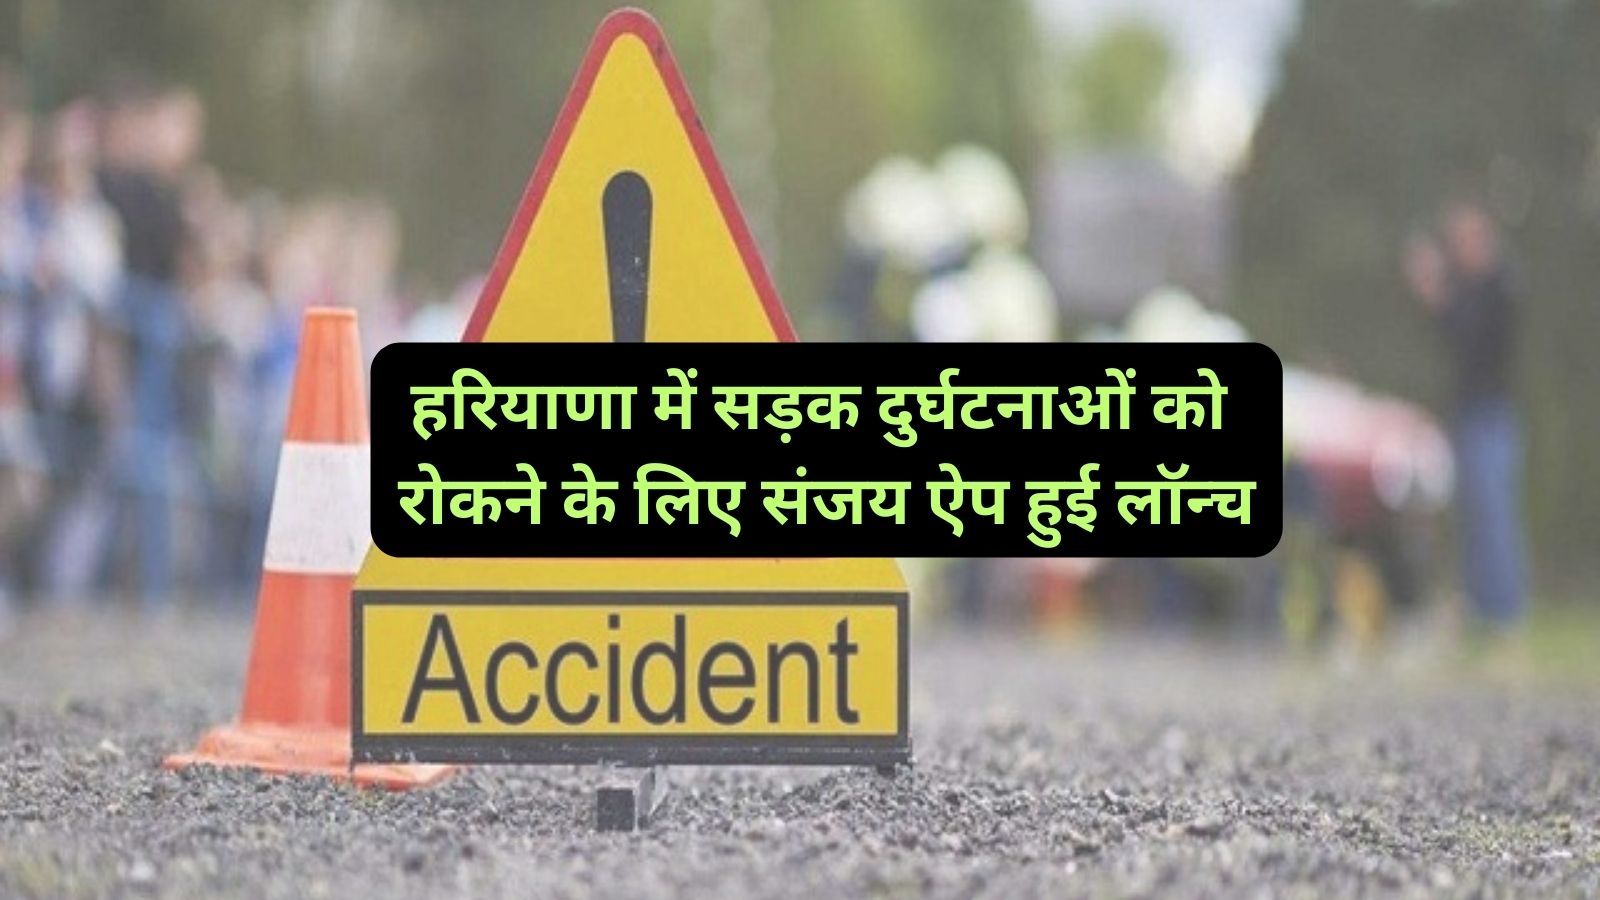 Sanjay App Launch Haryana :हरियाणा में सड़क दुर्घटनाओं को रोकने के लिए संजय ऐप हुई लॉन्च,सड़क दुर्घटनाओं मे आएगी कमी